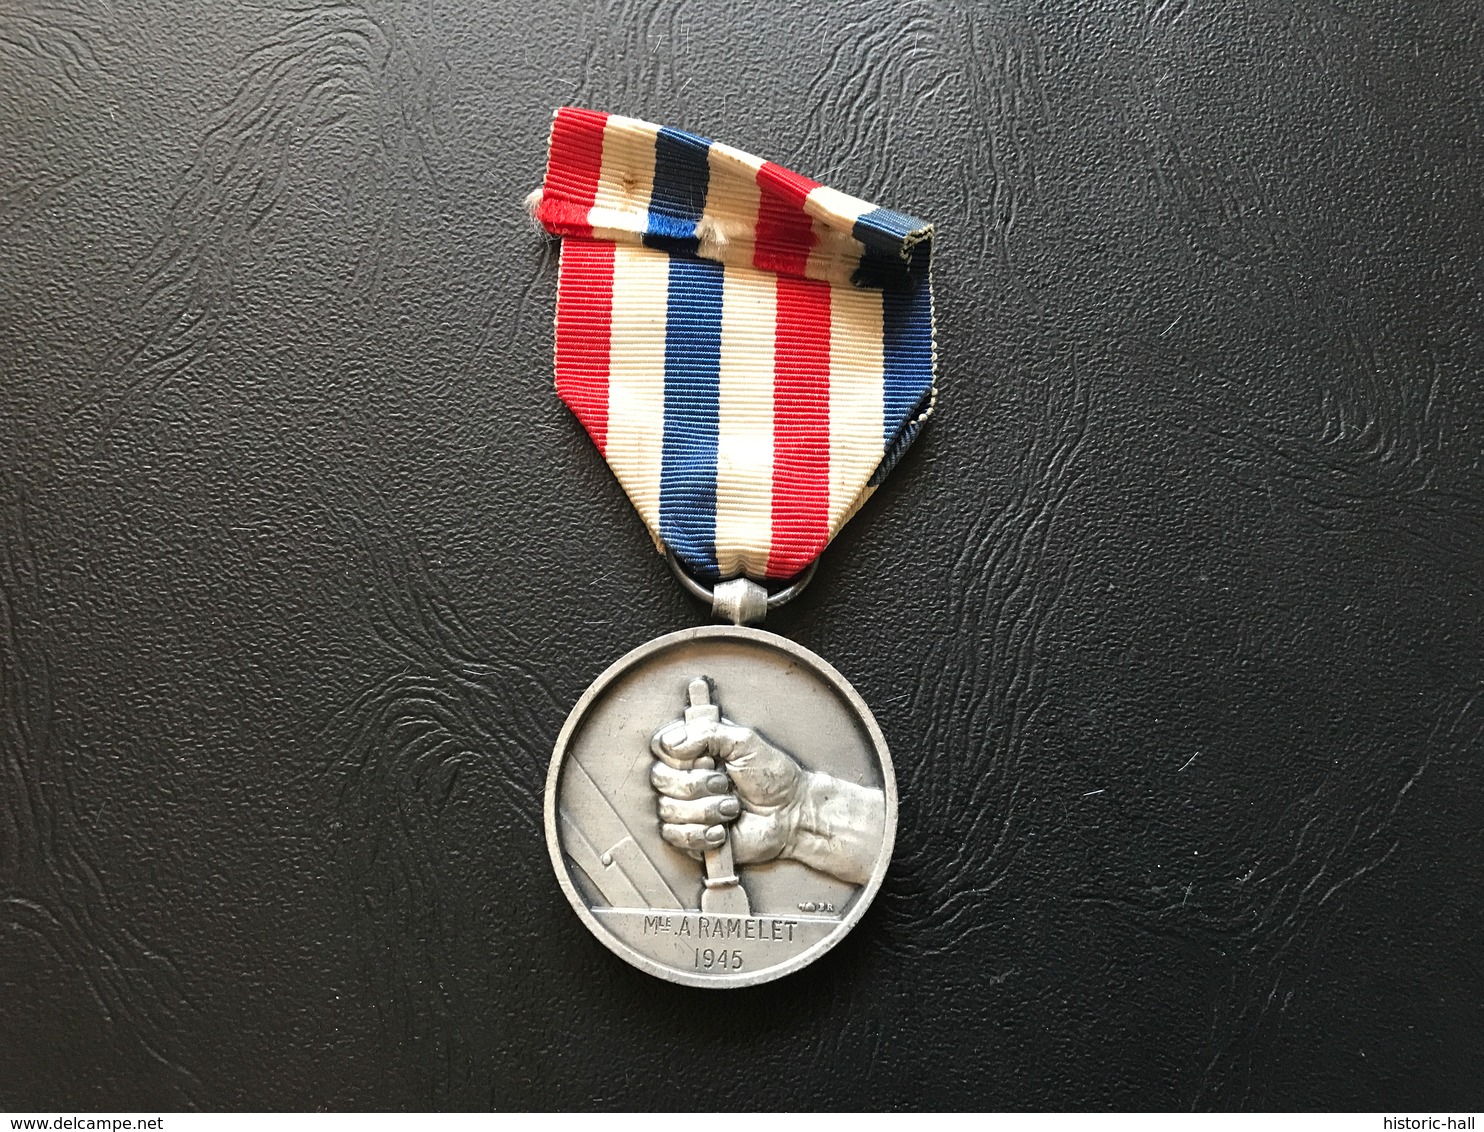 Medaille Des Cheminots 1945 Dit Medaille D’Honneur Des Chemins De Fer - France